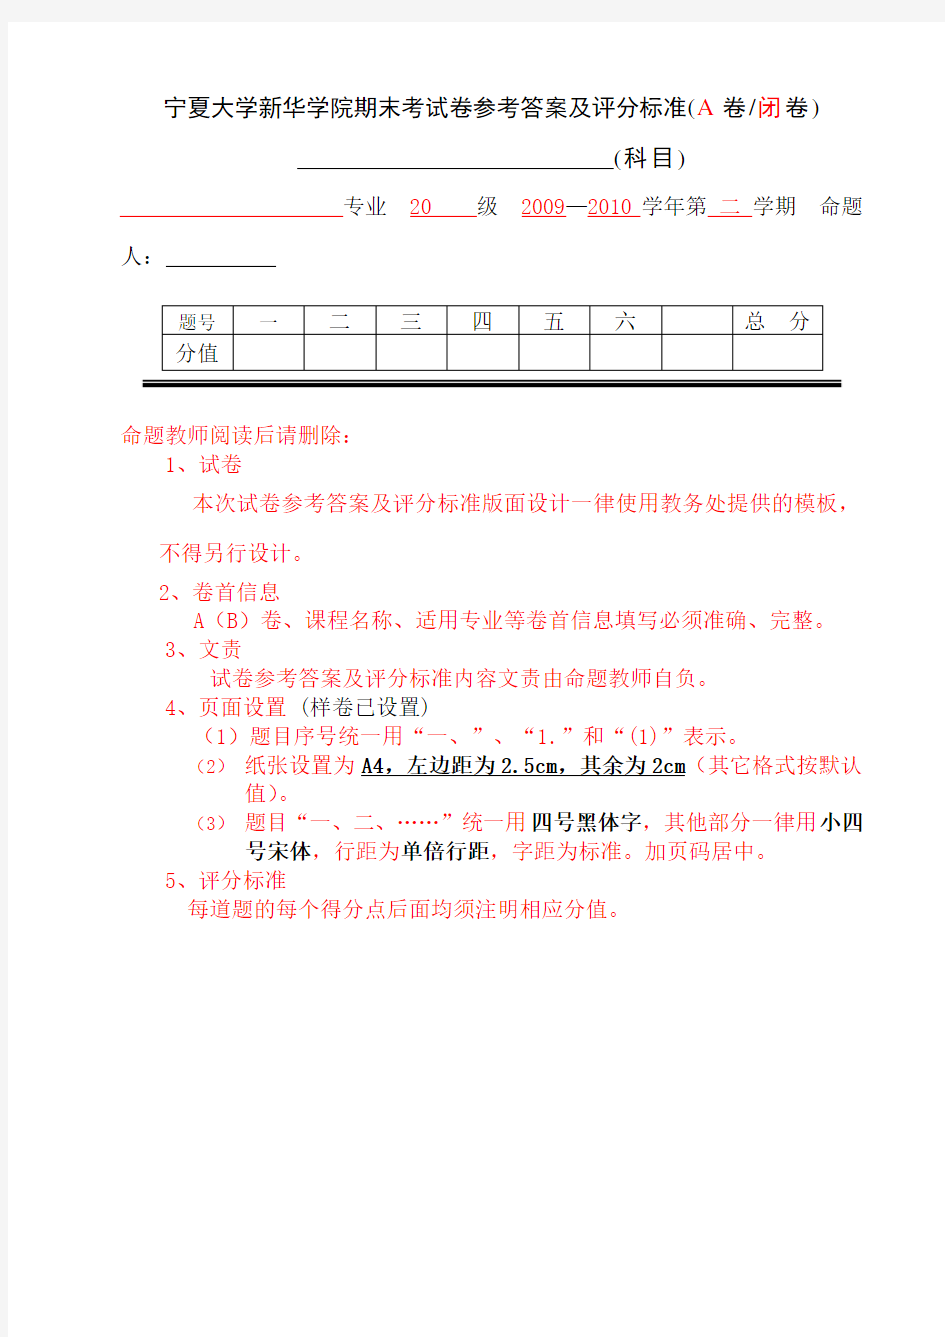 宁夏大学新华学院期末考试卷参考答案及评分标准(A卷闭卷)